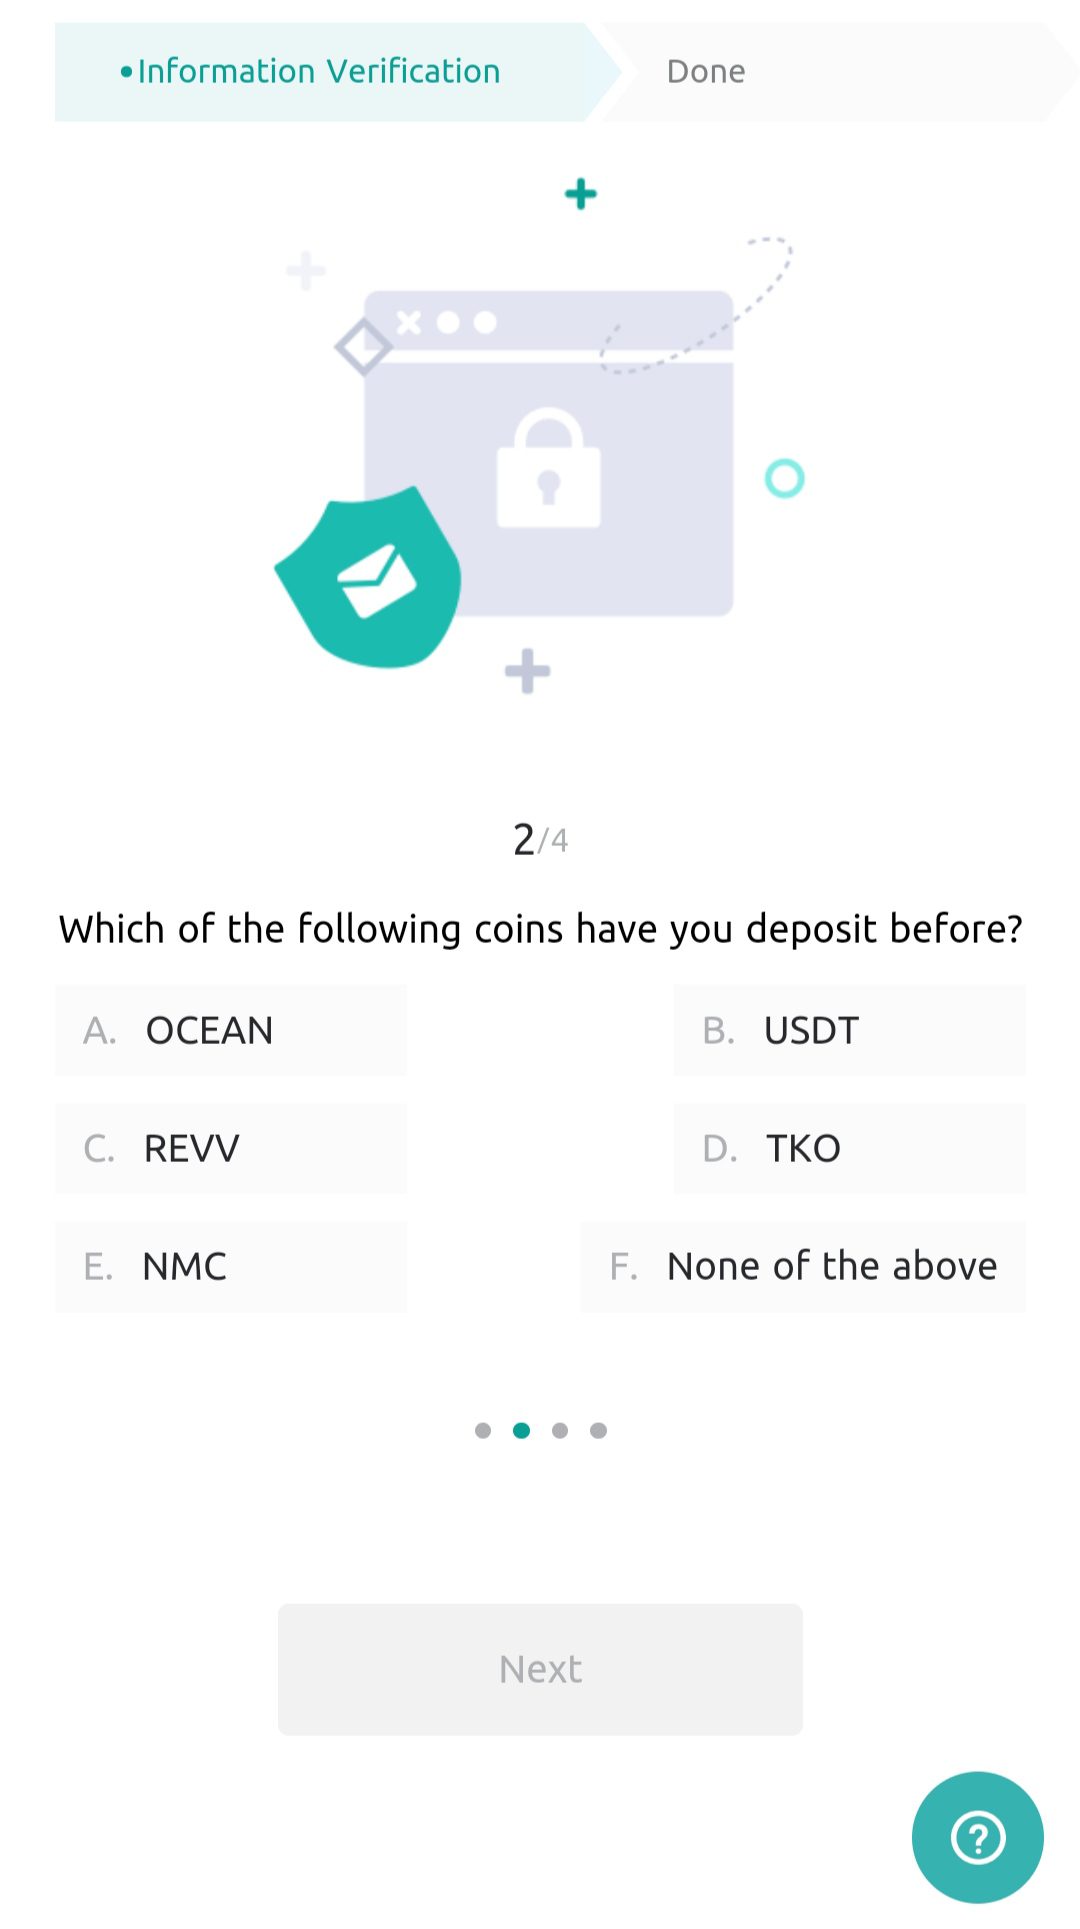 اسئلة الامن في حساب coinex عند نسيان رمز المصادقة الثنائية